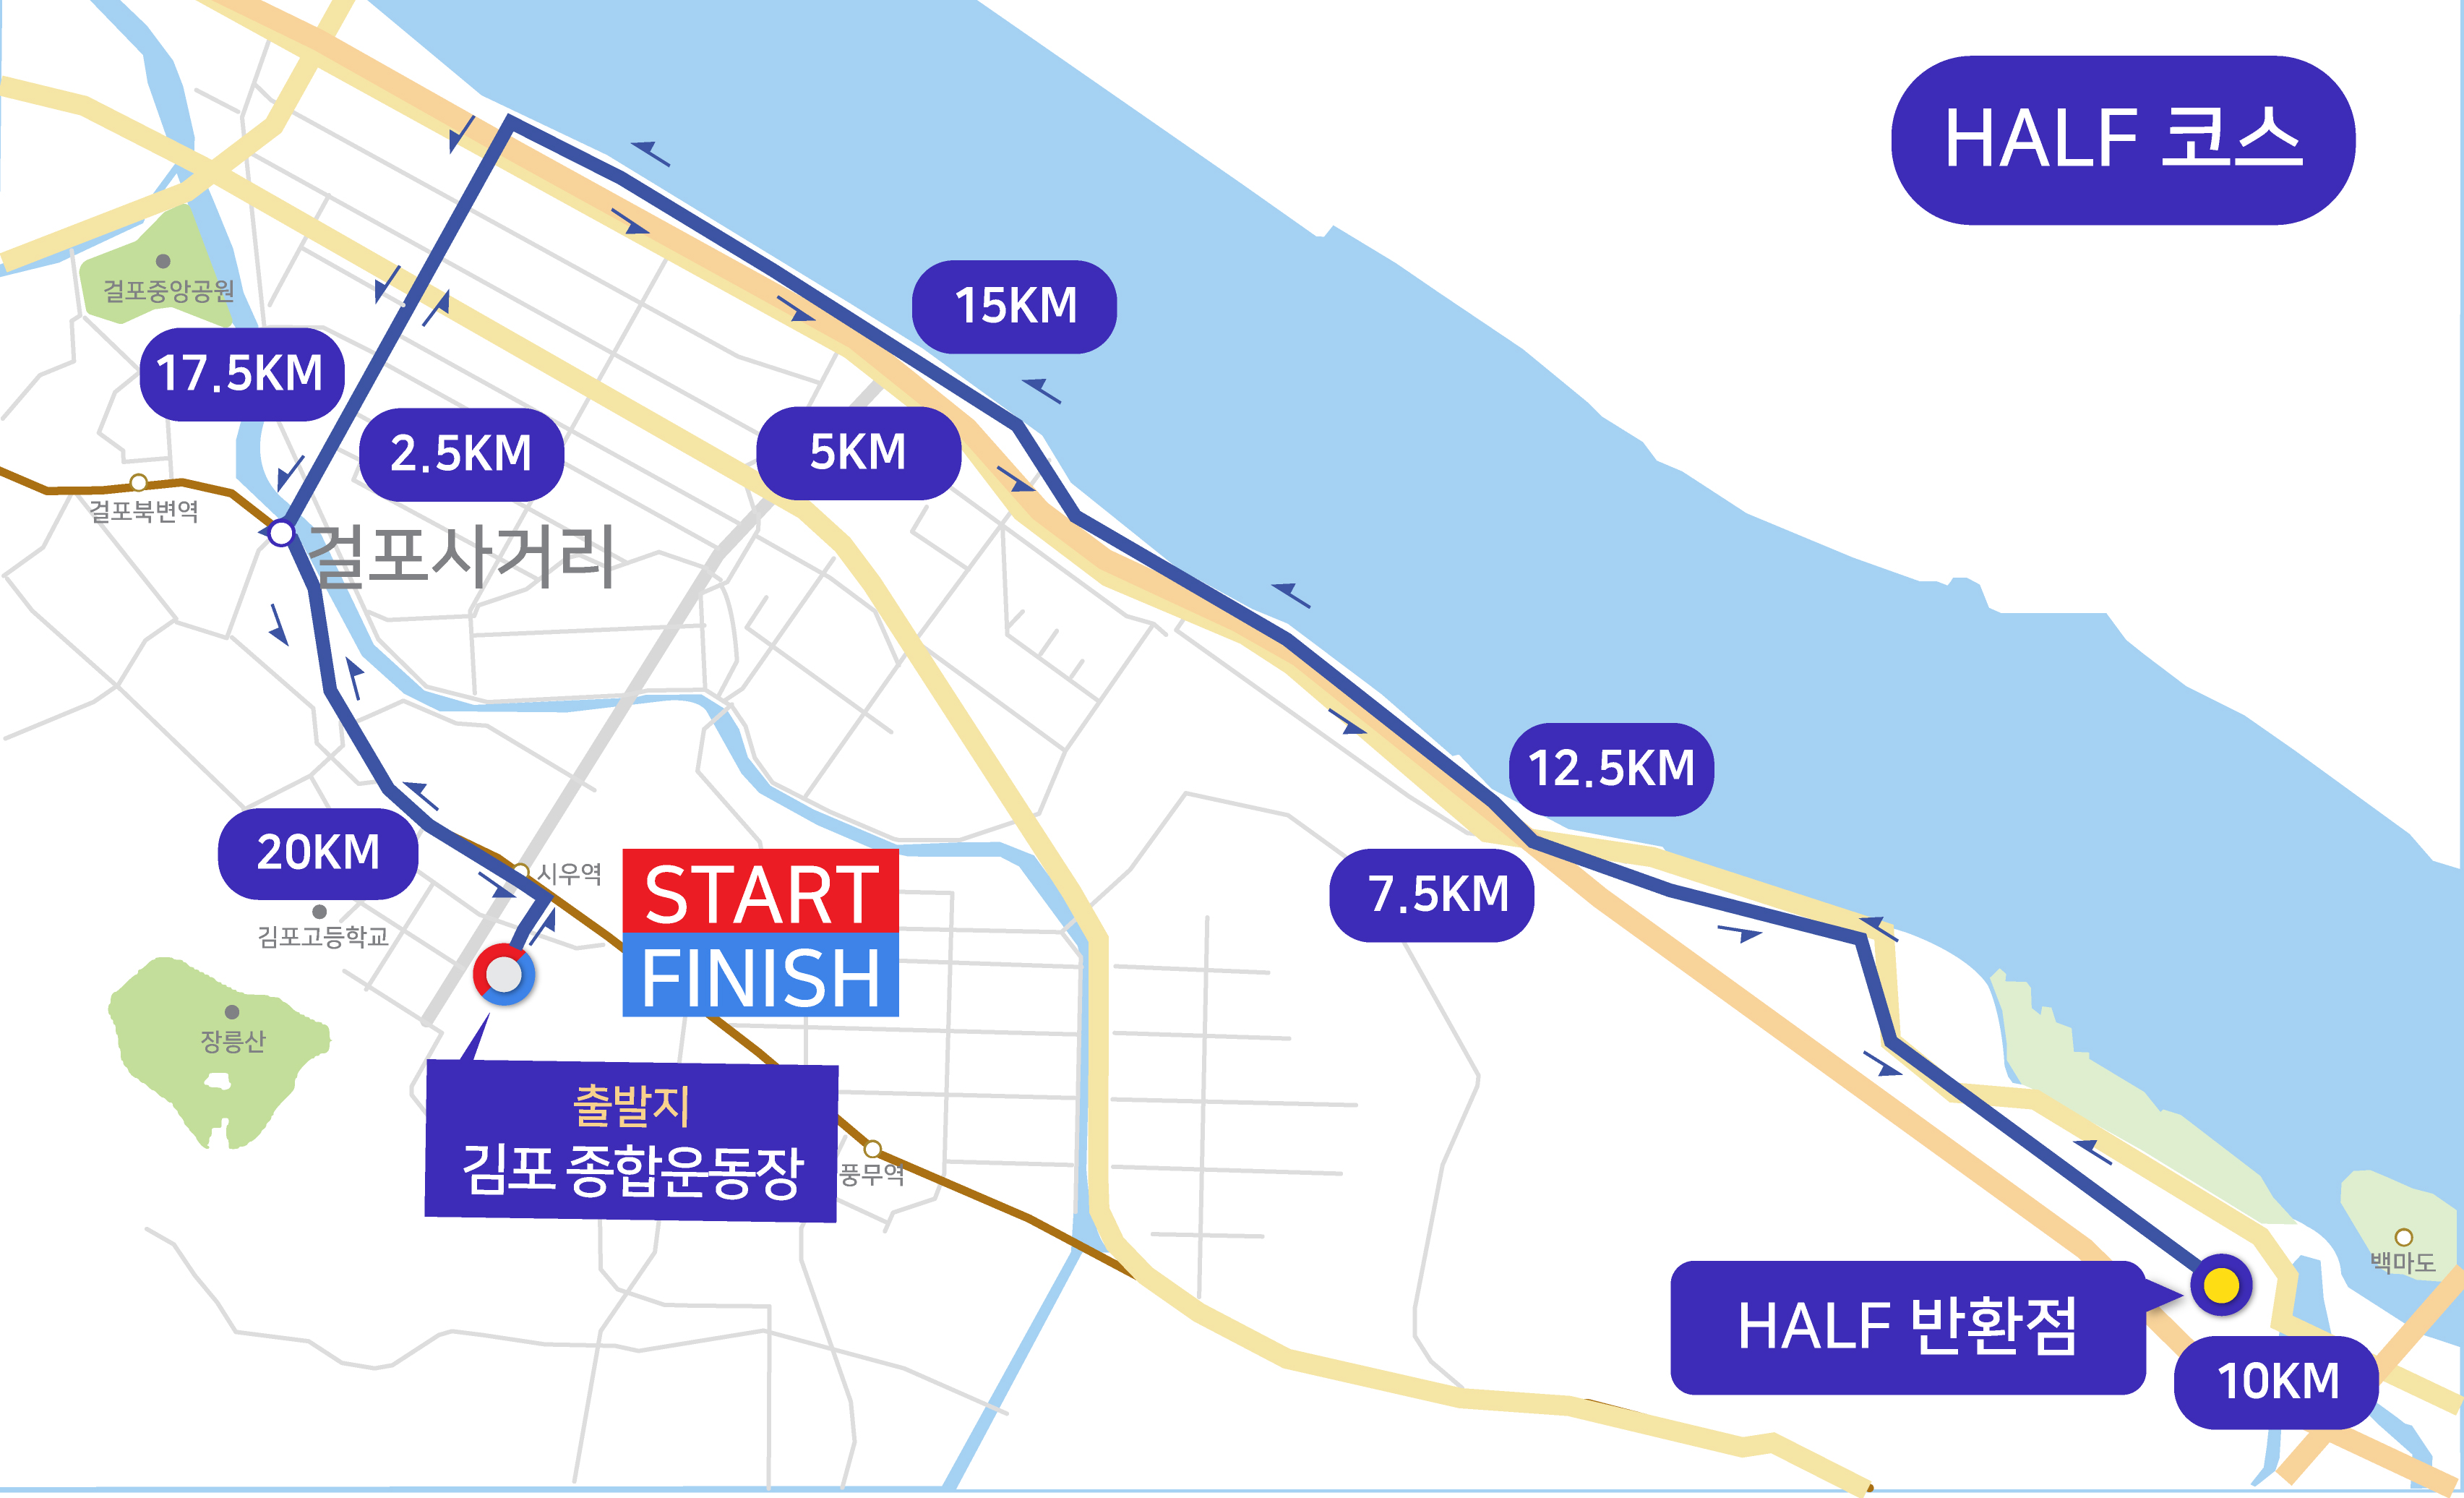 김포한강마라톤 하프 코스맵